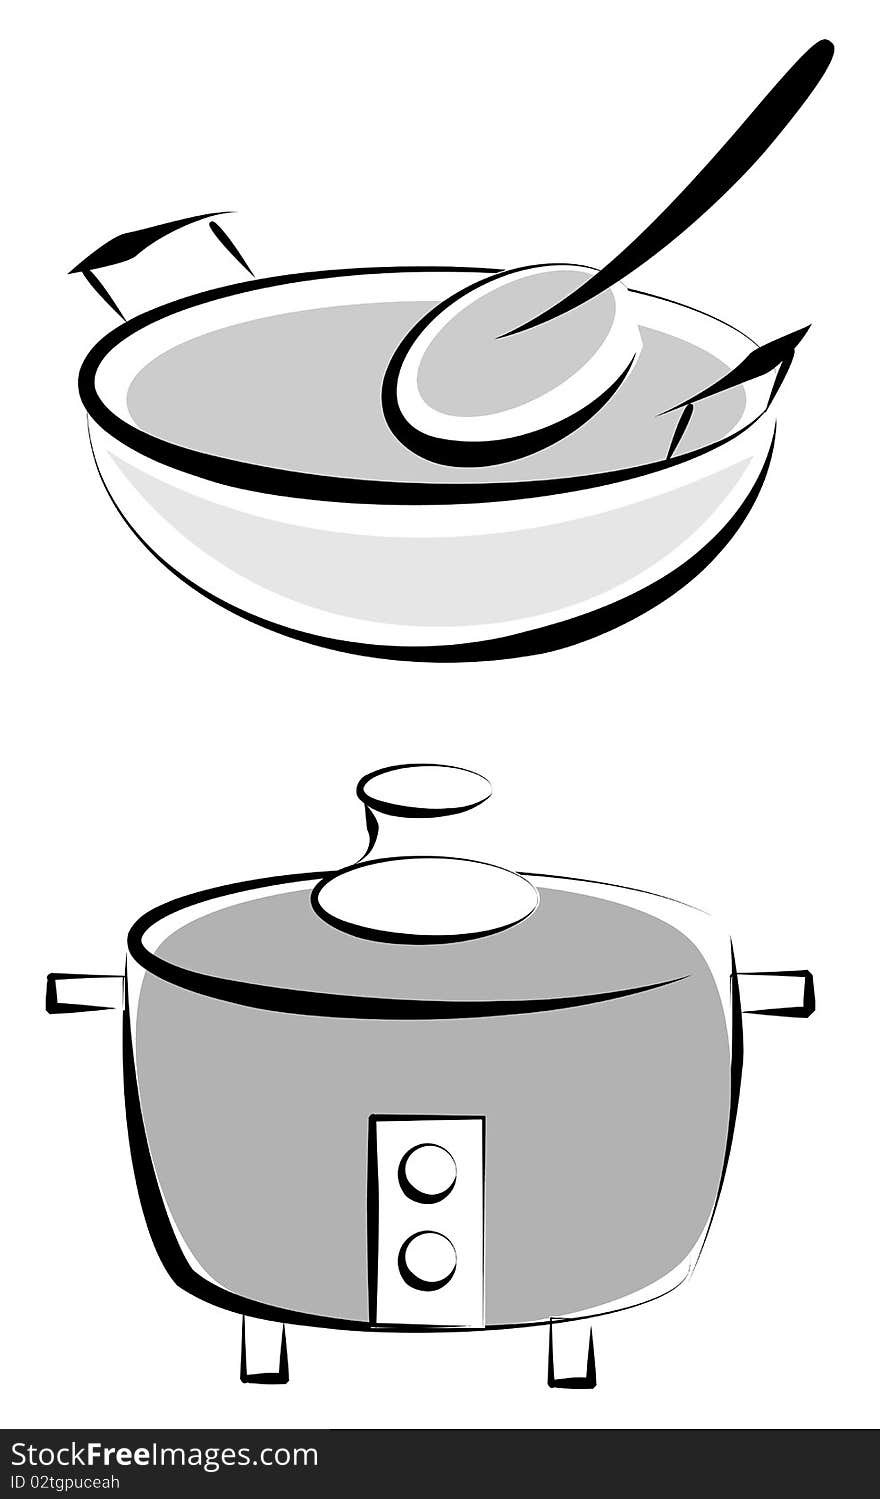 Illustration of kitchenware on white background